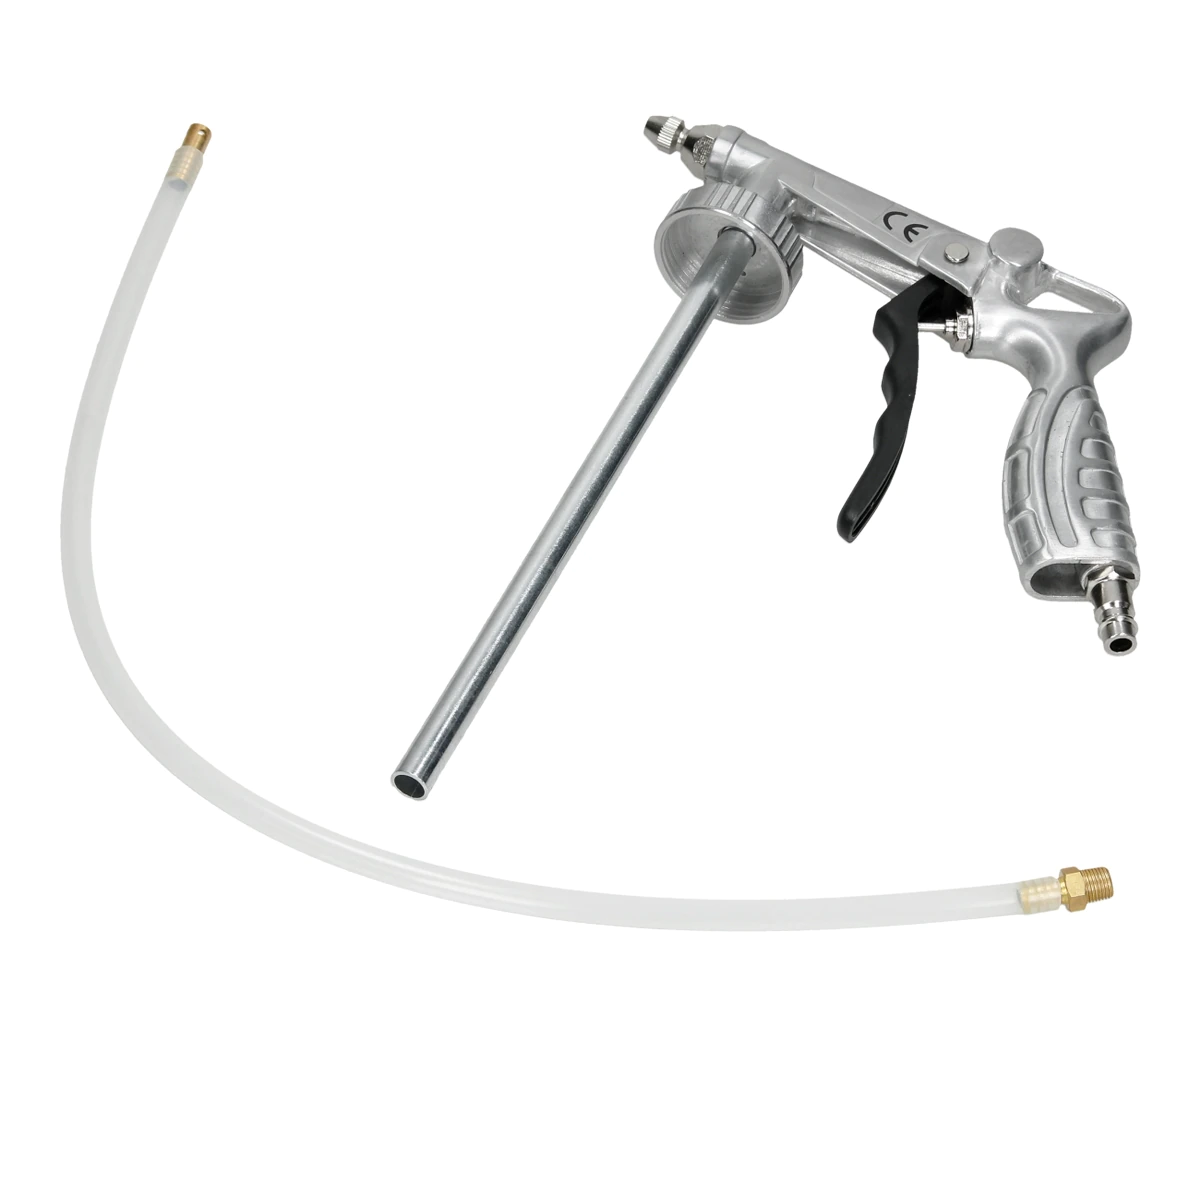 Pistol insonorizant, SOLL SC-5514,  pentru aplicat insonorizant sau ceara cavitati, contine furtun 51 cm [0]